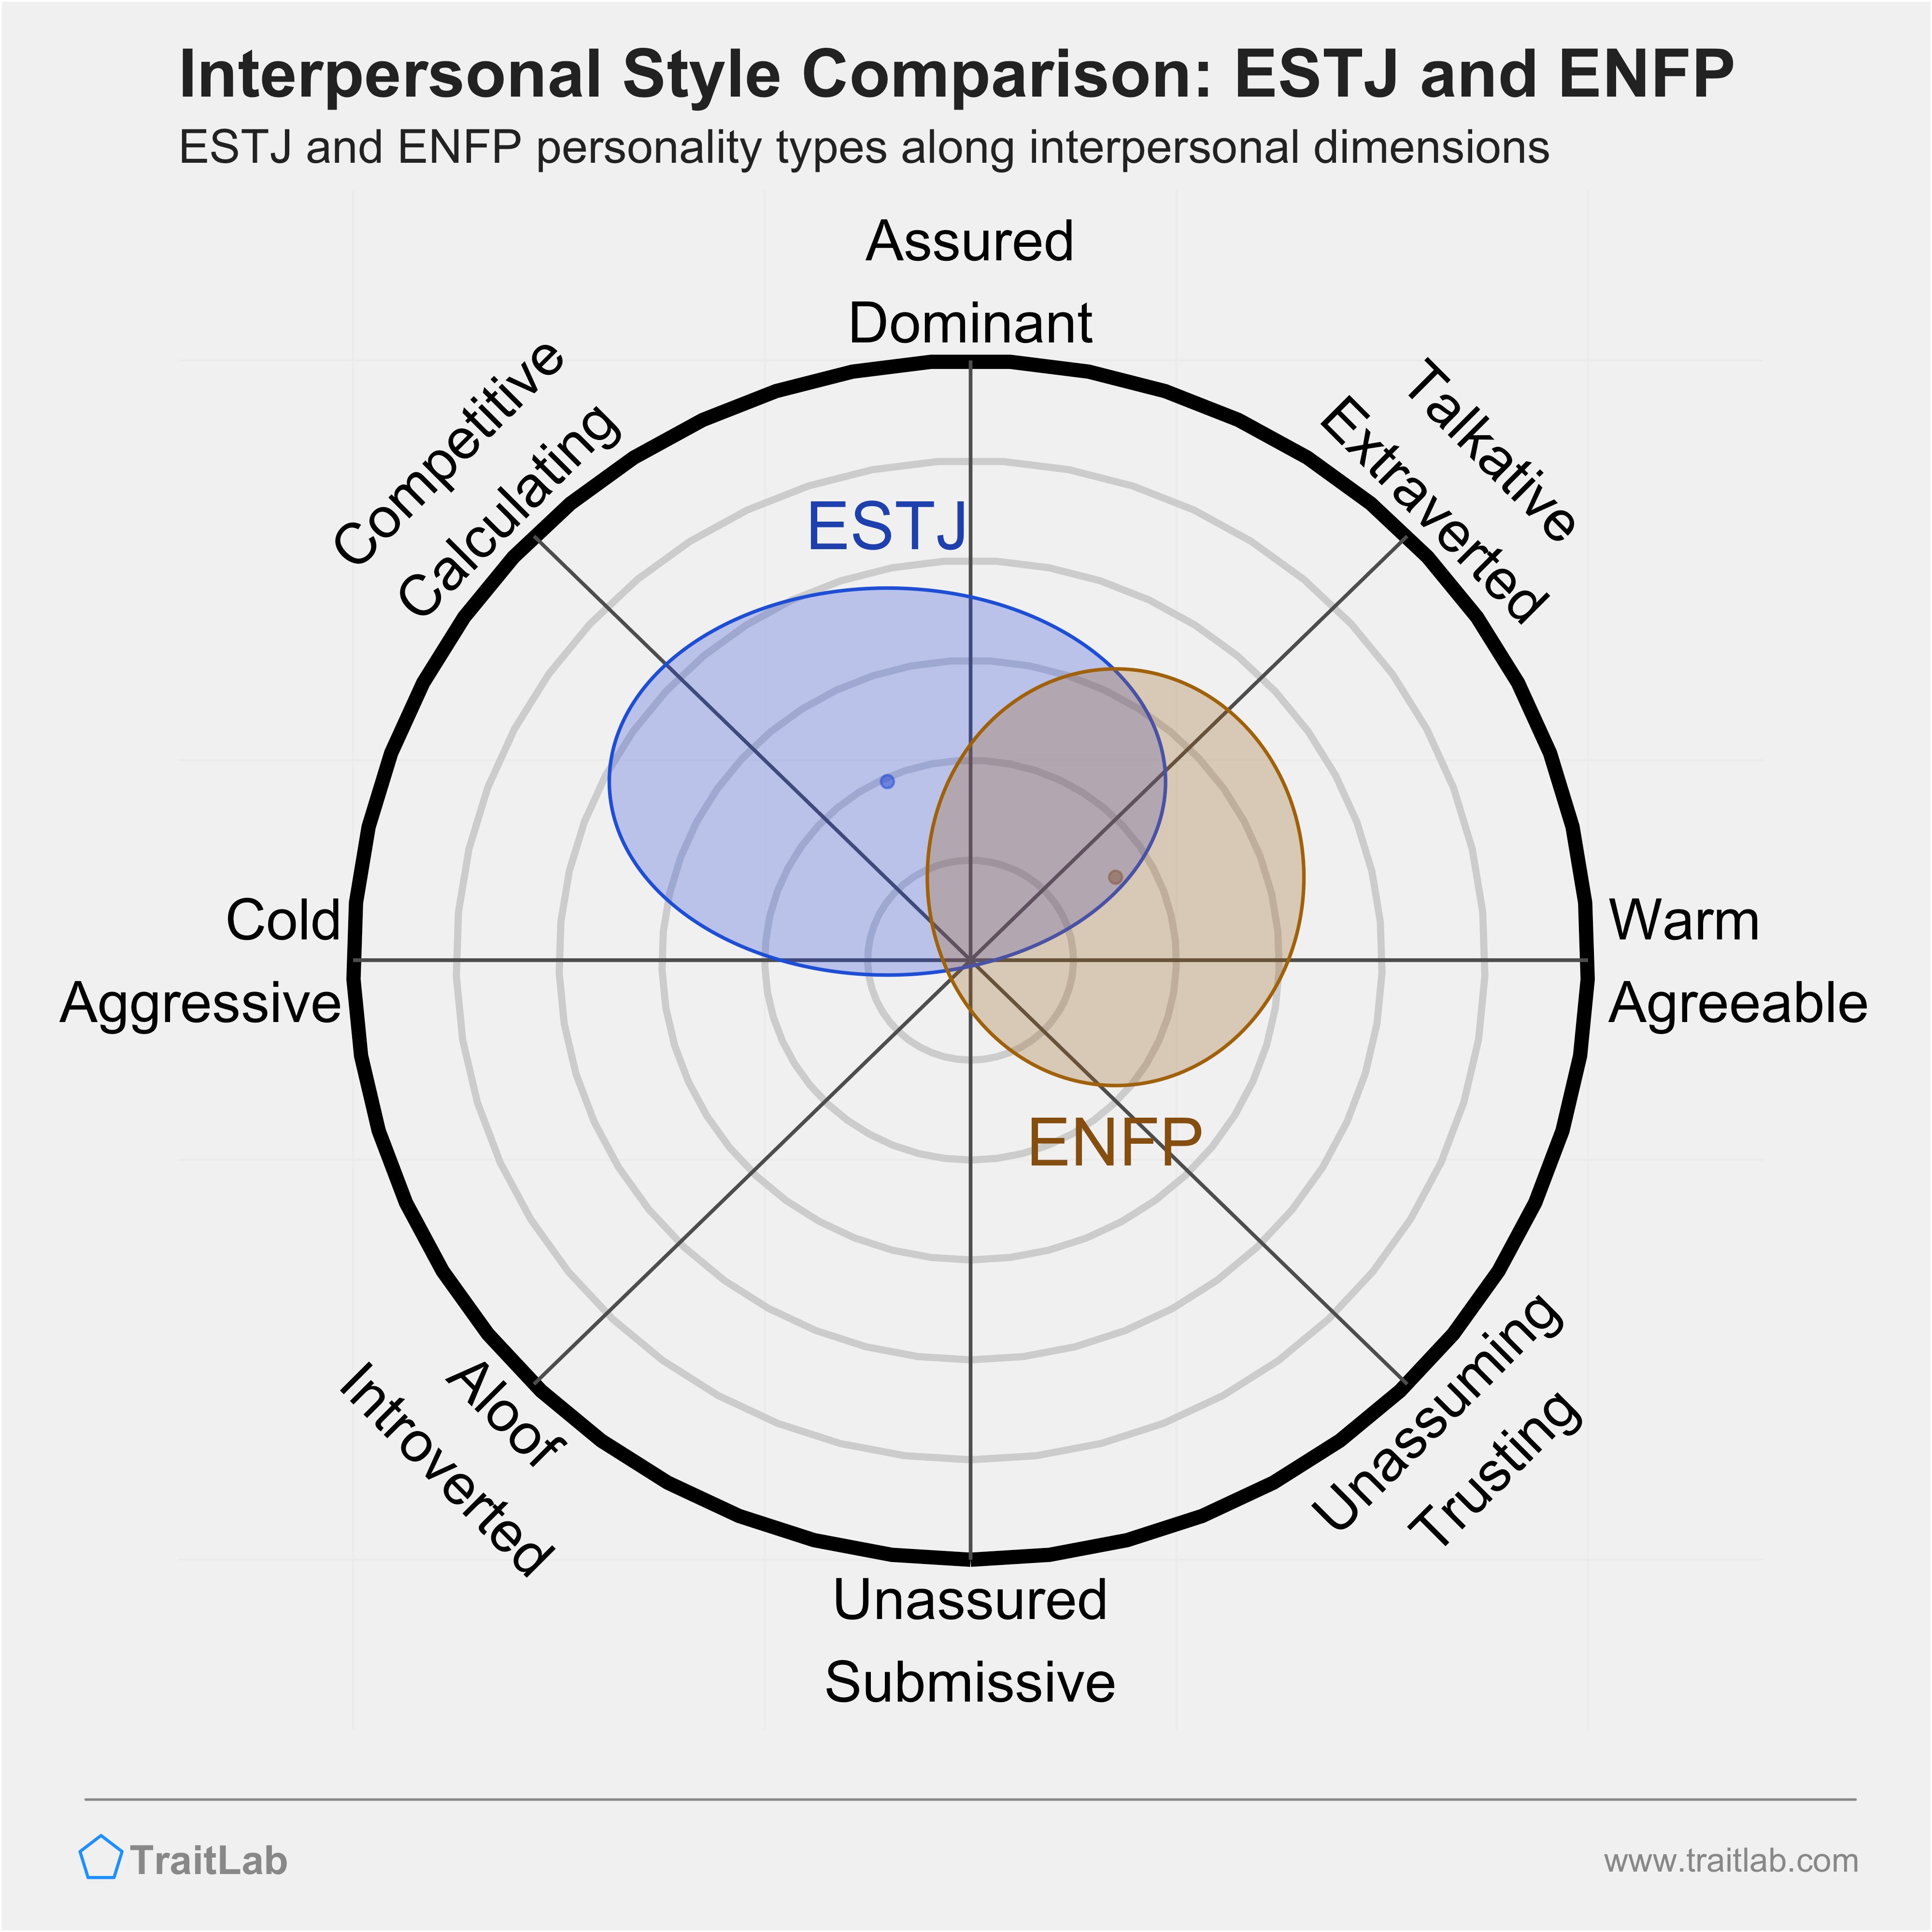 ESTJ and ENFP comparison across interpersonal dimensions